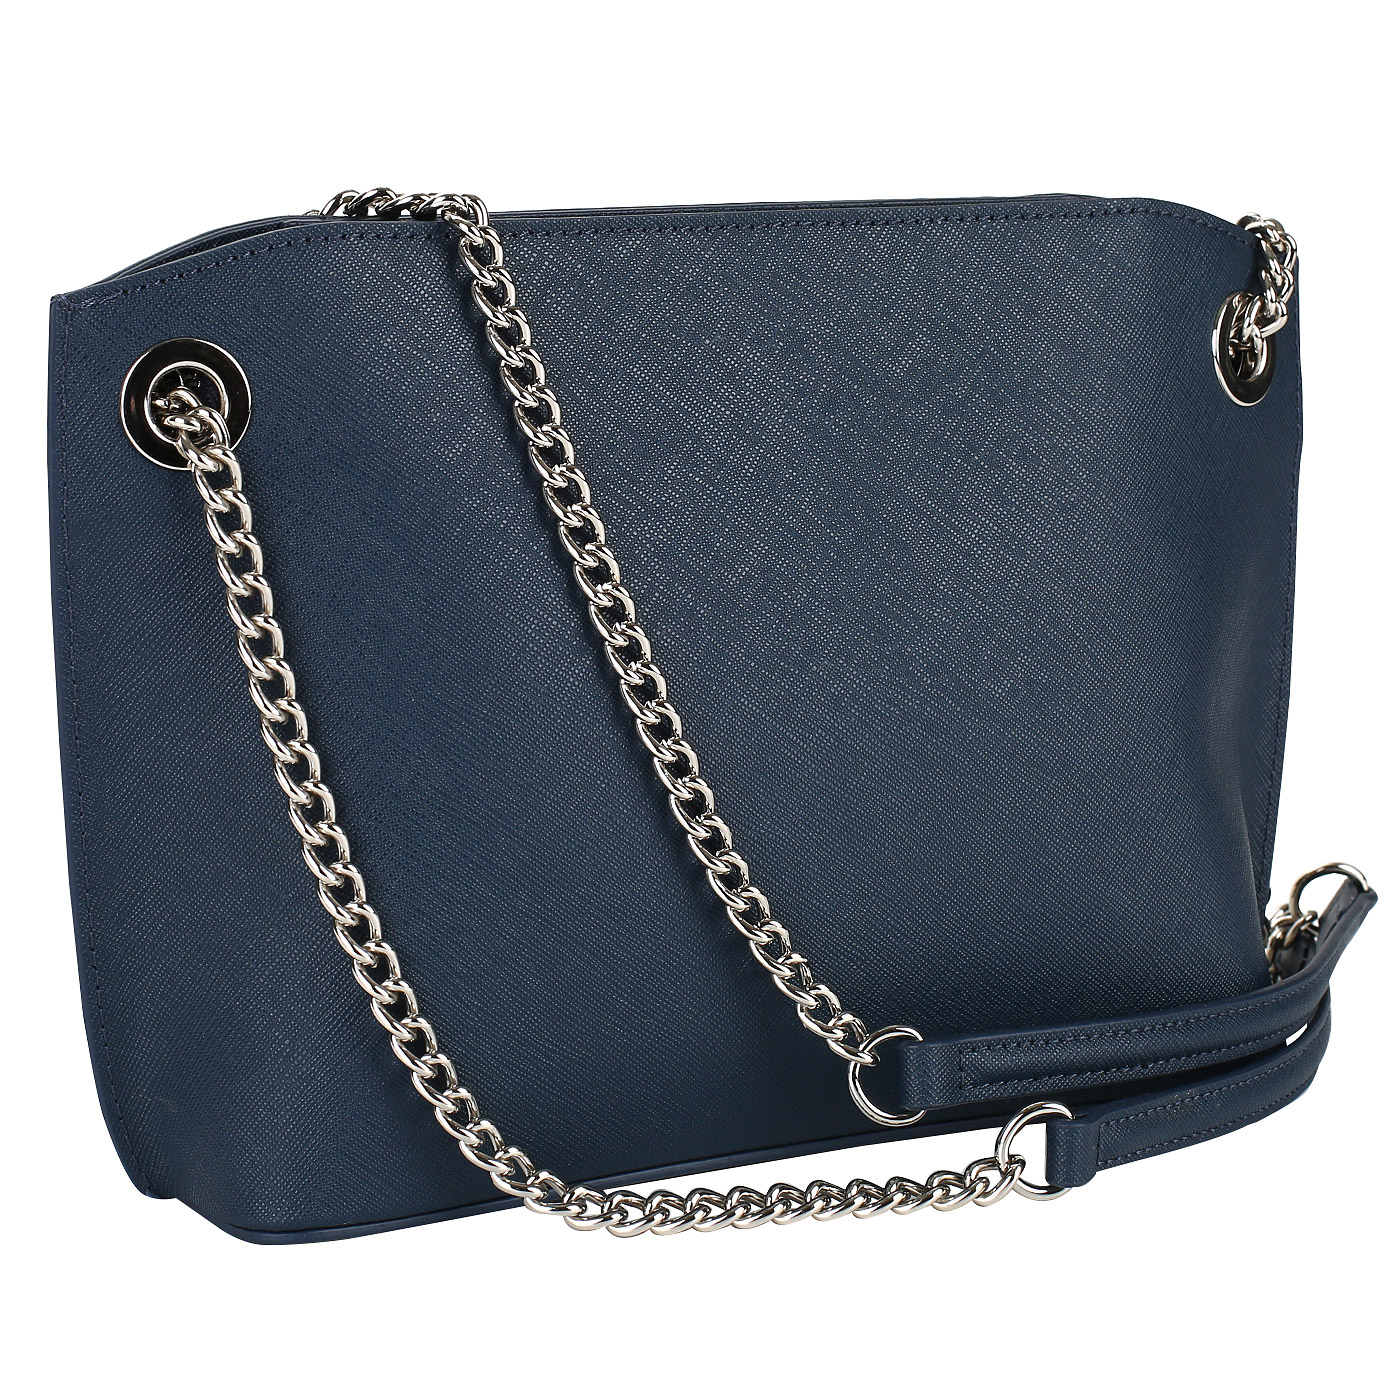 Женская сумка из синей сафьяновой кожи Cromia Perla